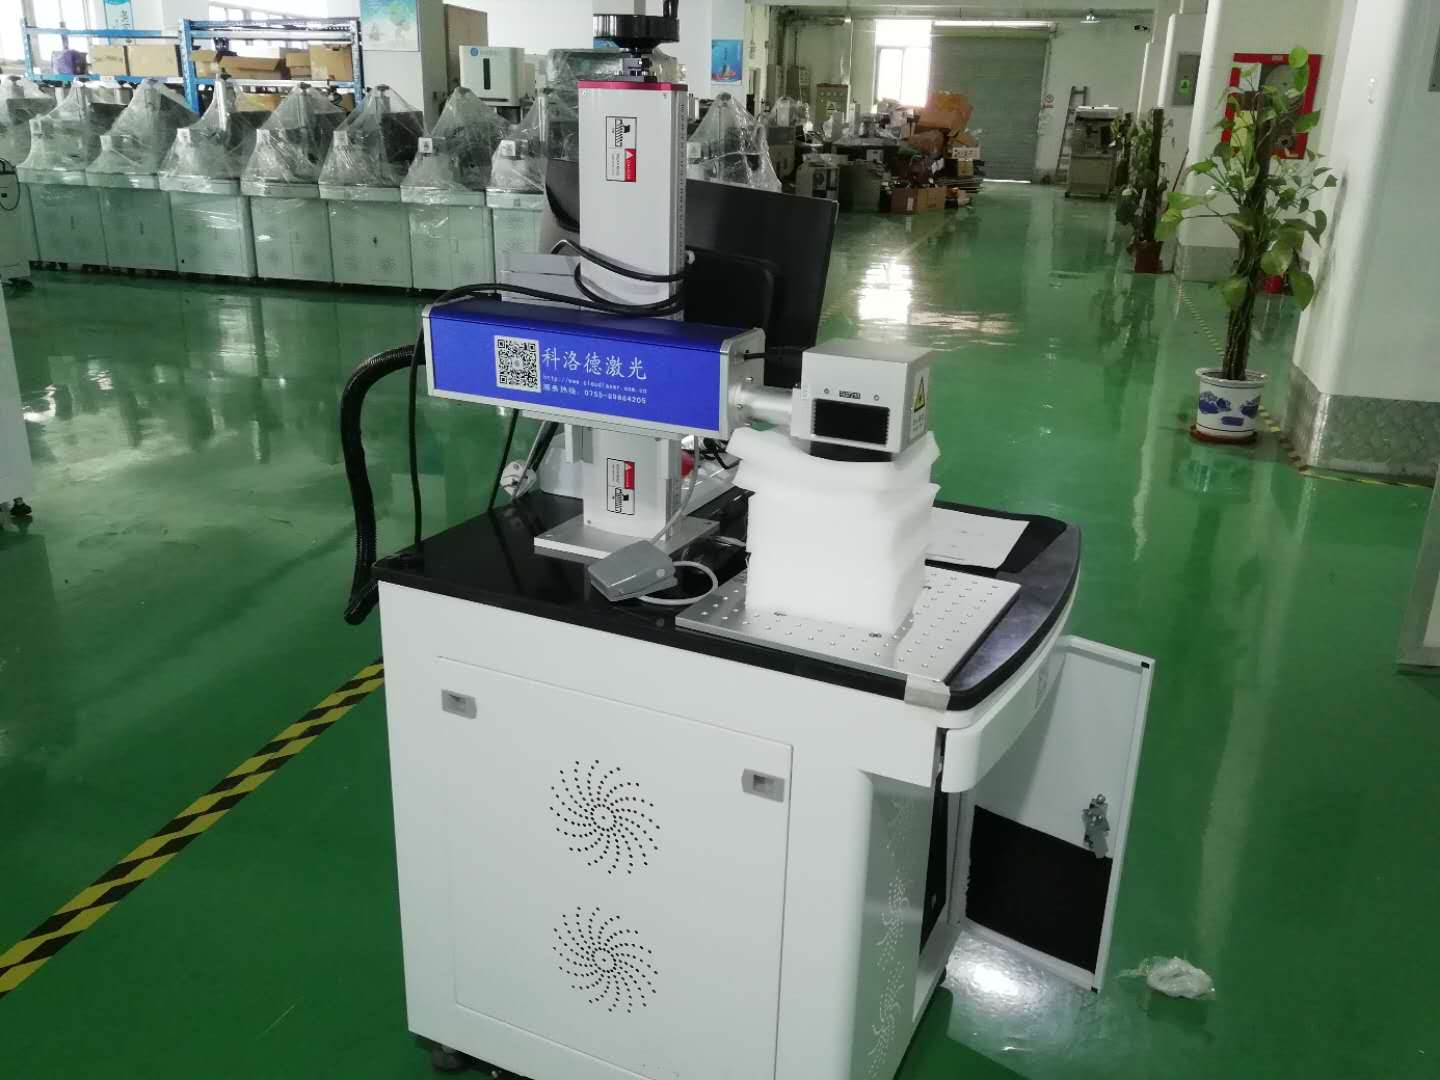 深圳20W二手光纤激光打标机M6个人低价转让租赁,预购从速